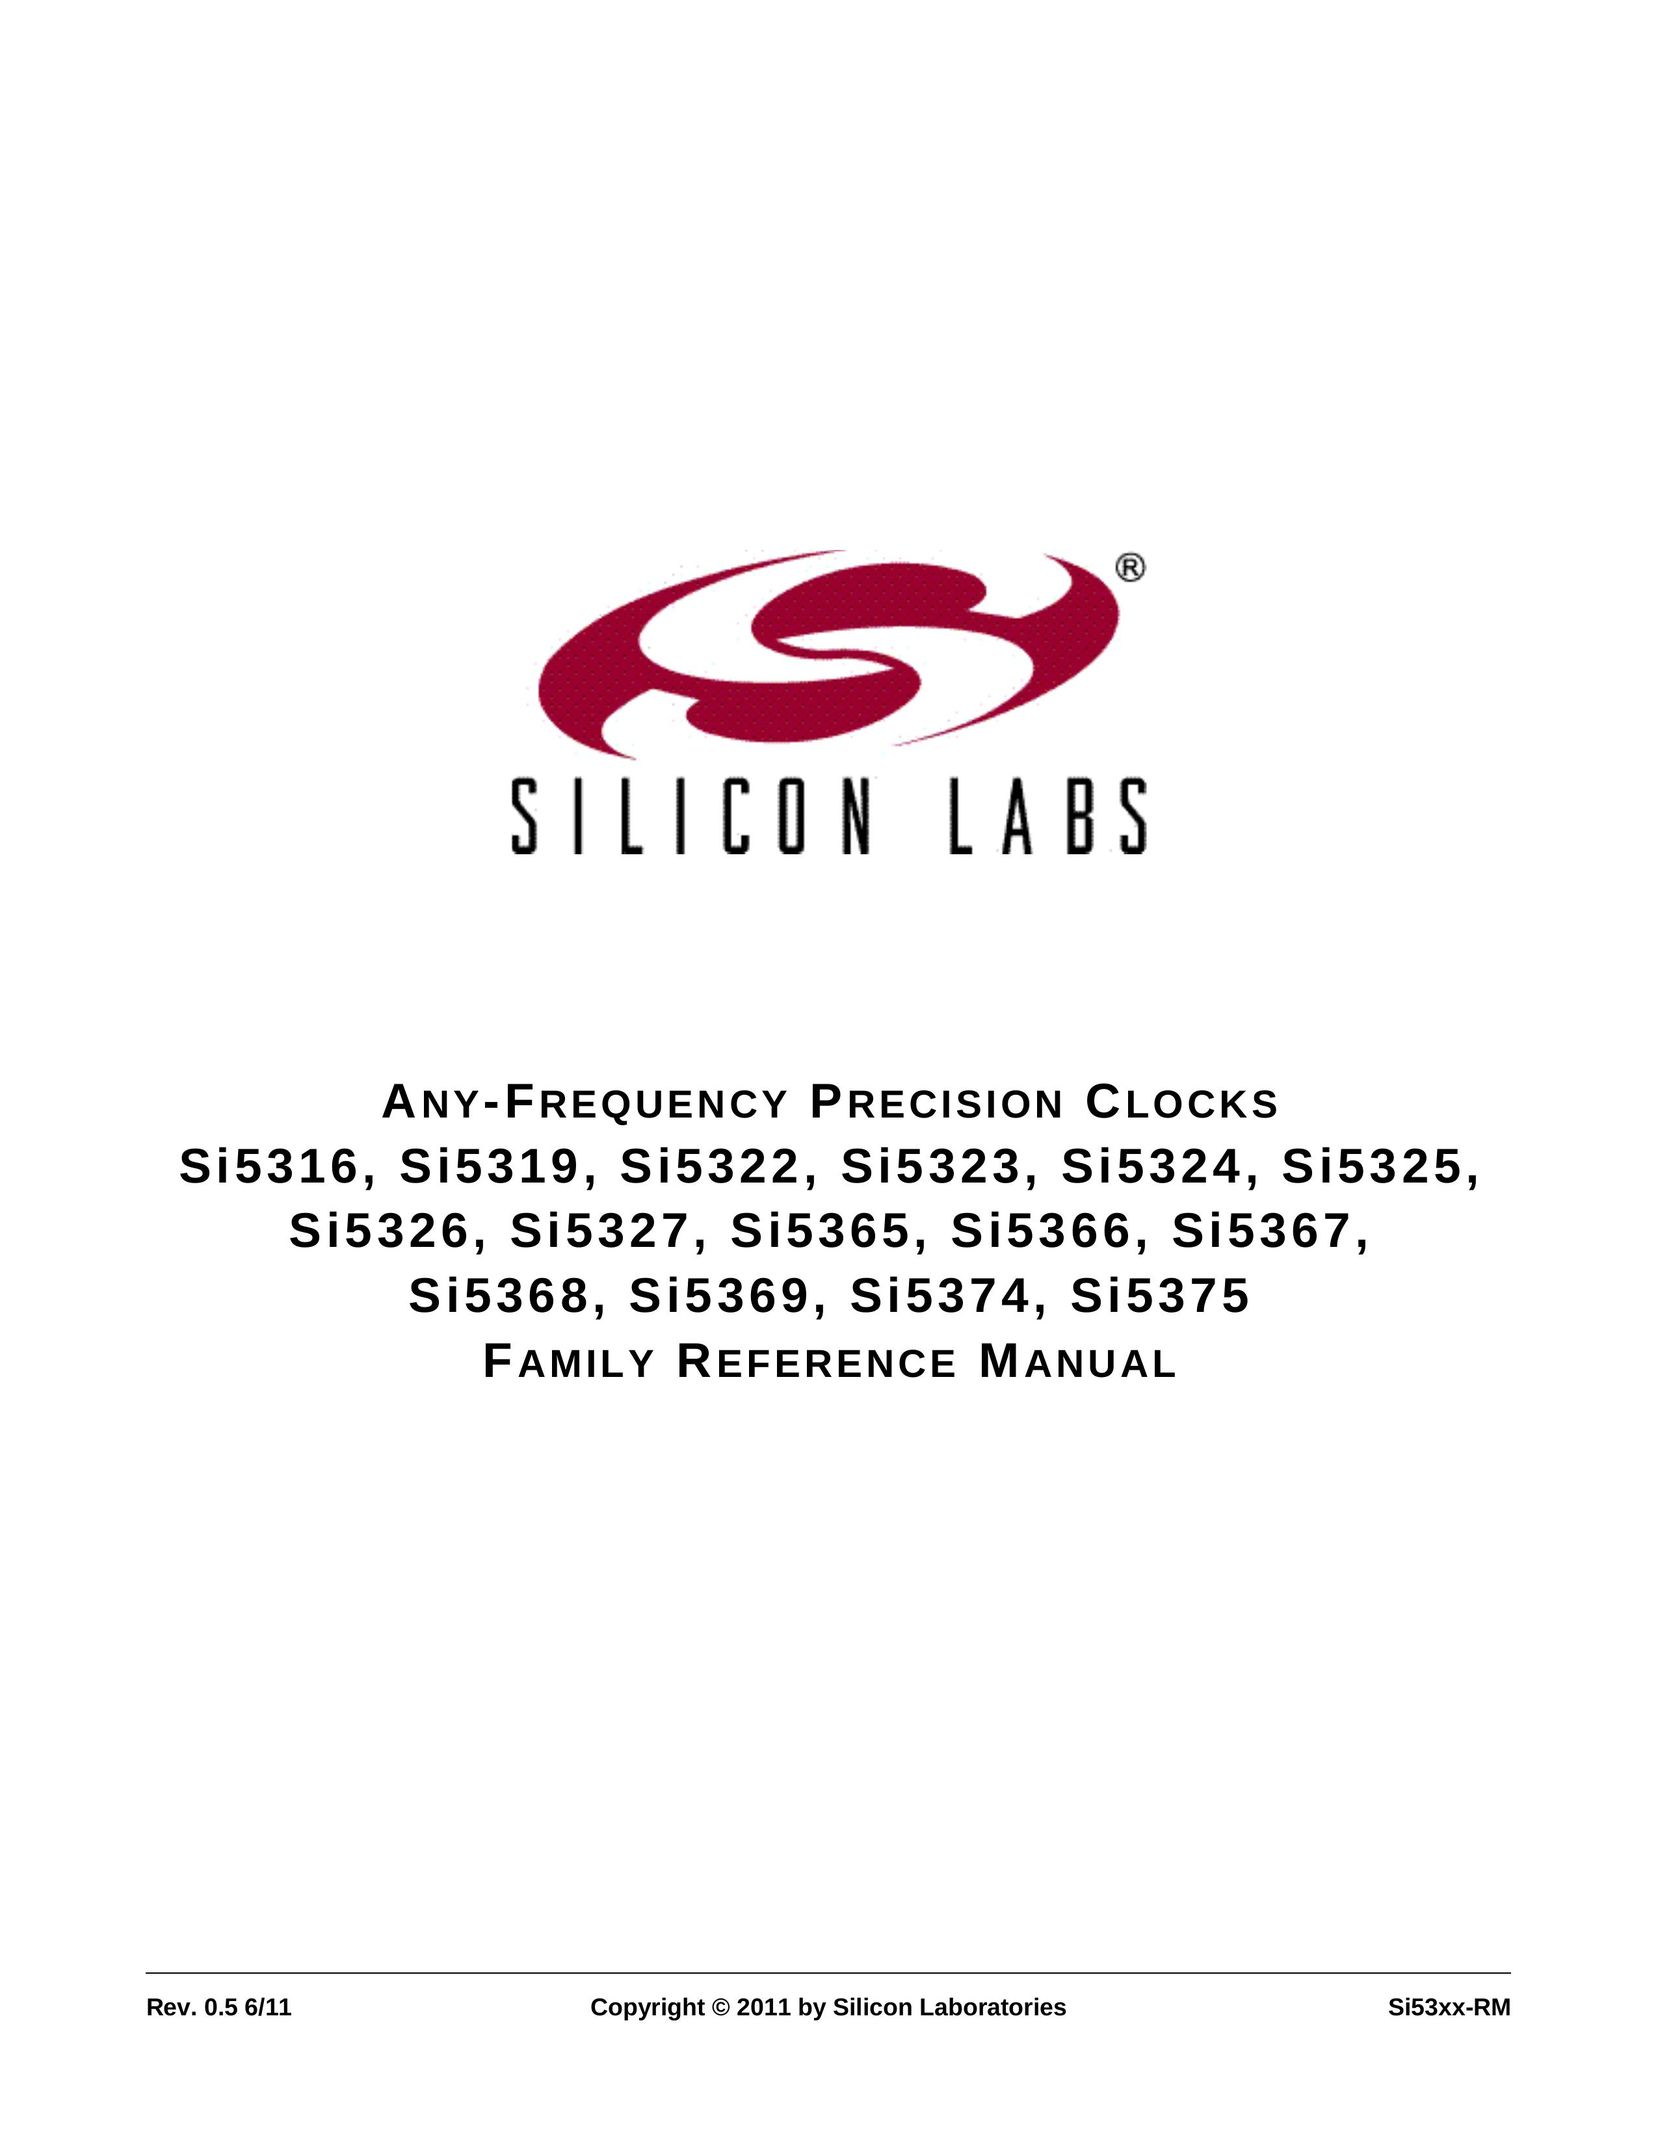 Silicon Laboratories SI5369 Clock User Manual